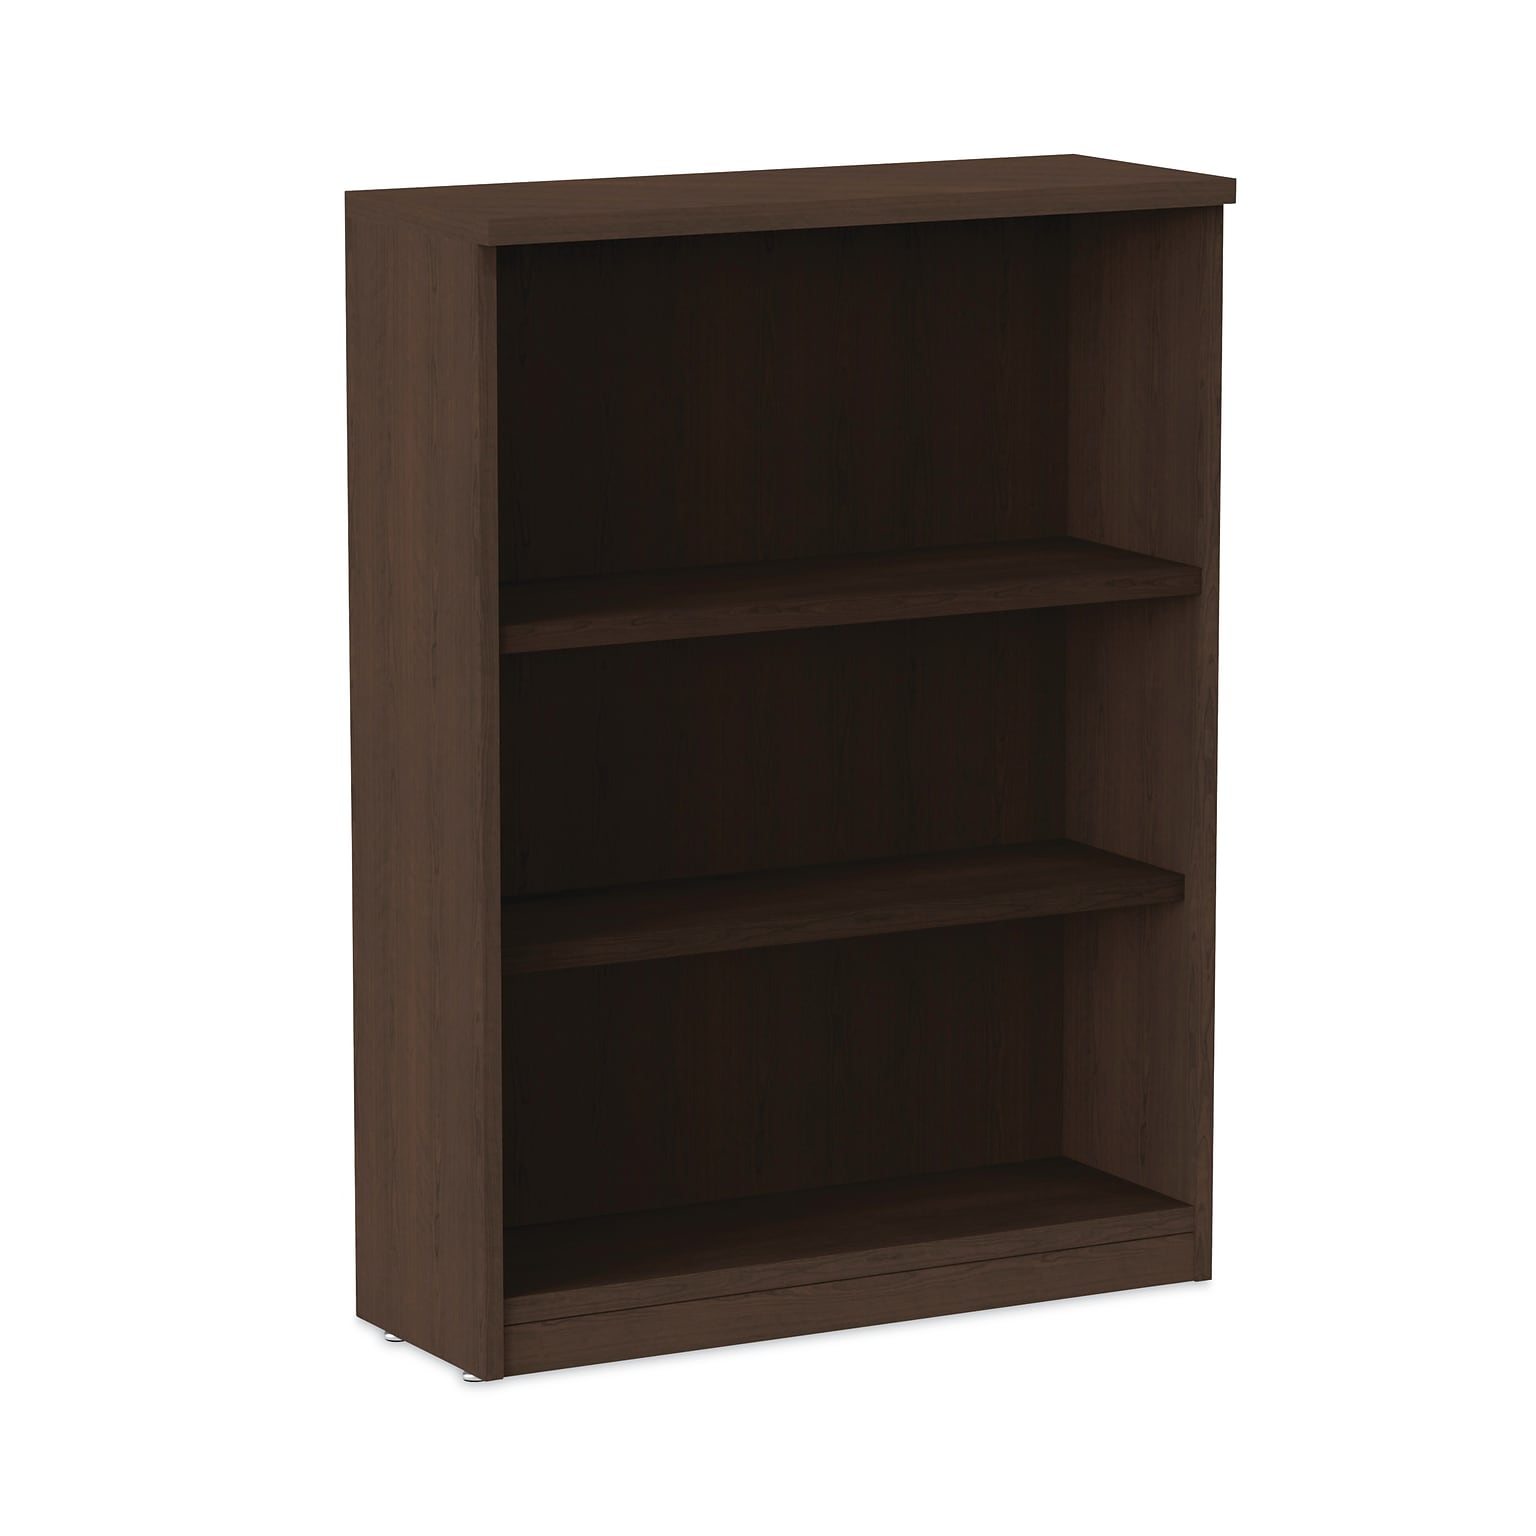 Alera Valencia Series 40 3-Shelf Bookcase with Adjustable Shelves, Espresso (ALEVA634432ES)